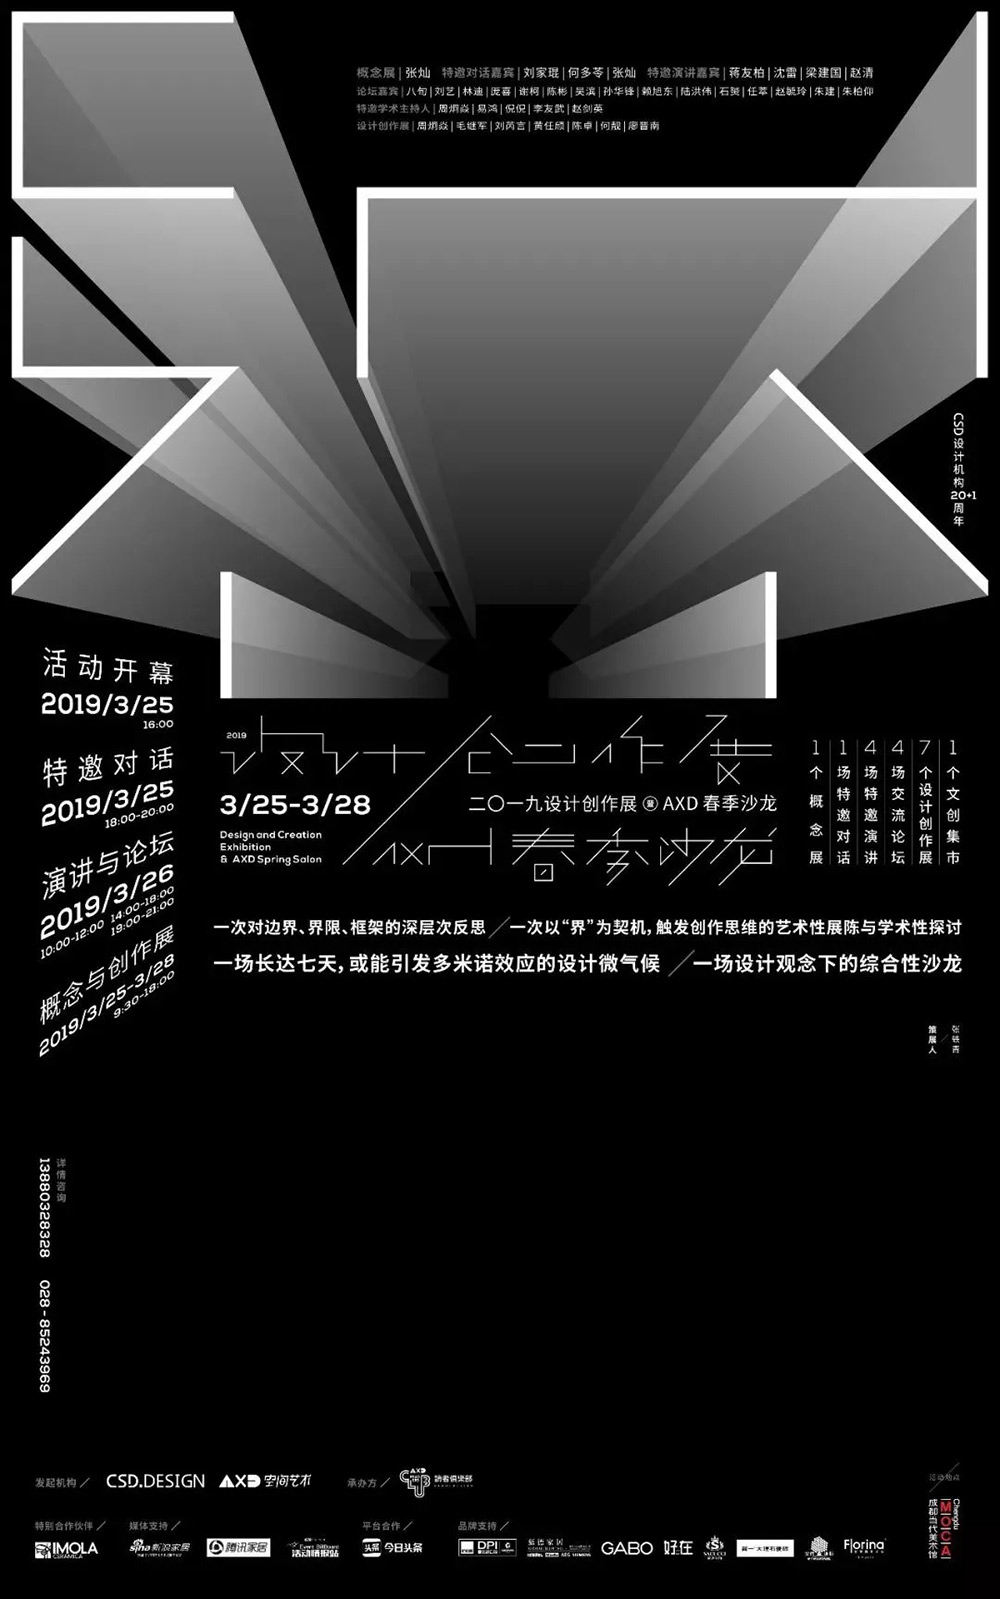 12张优质的创意中文展览海报